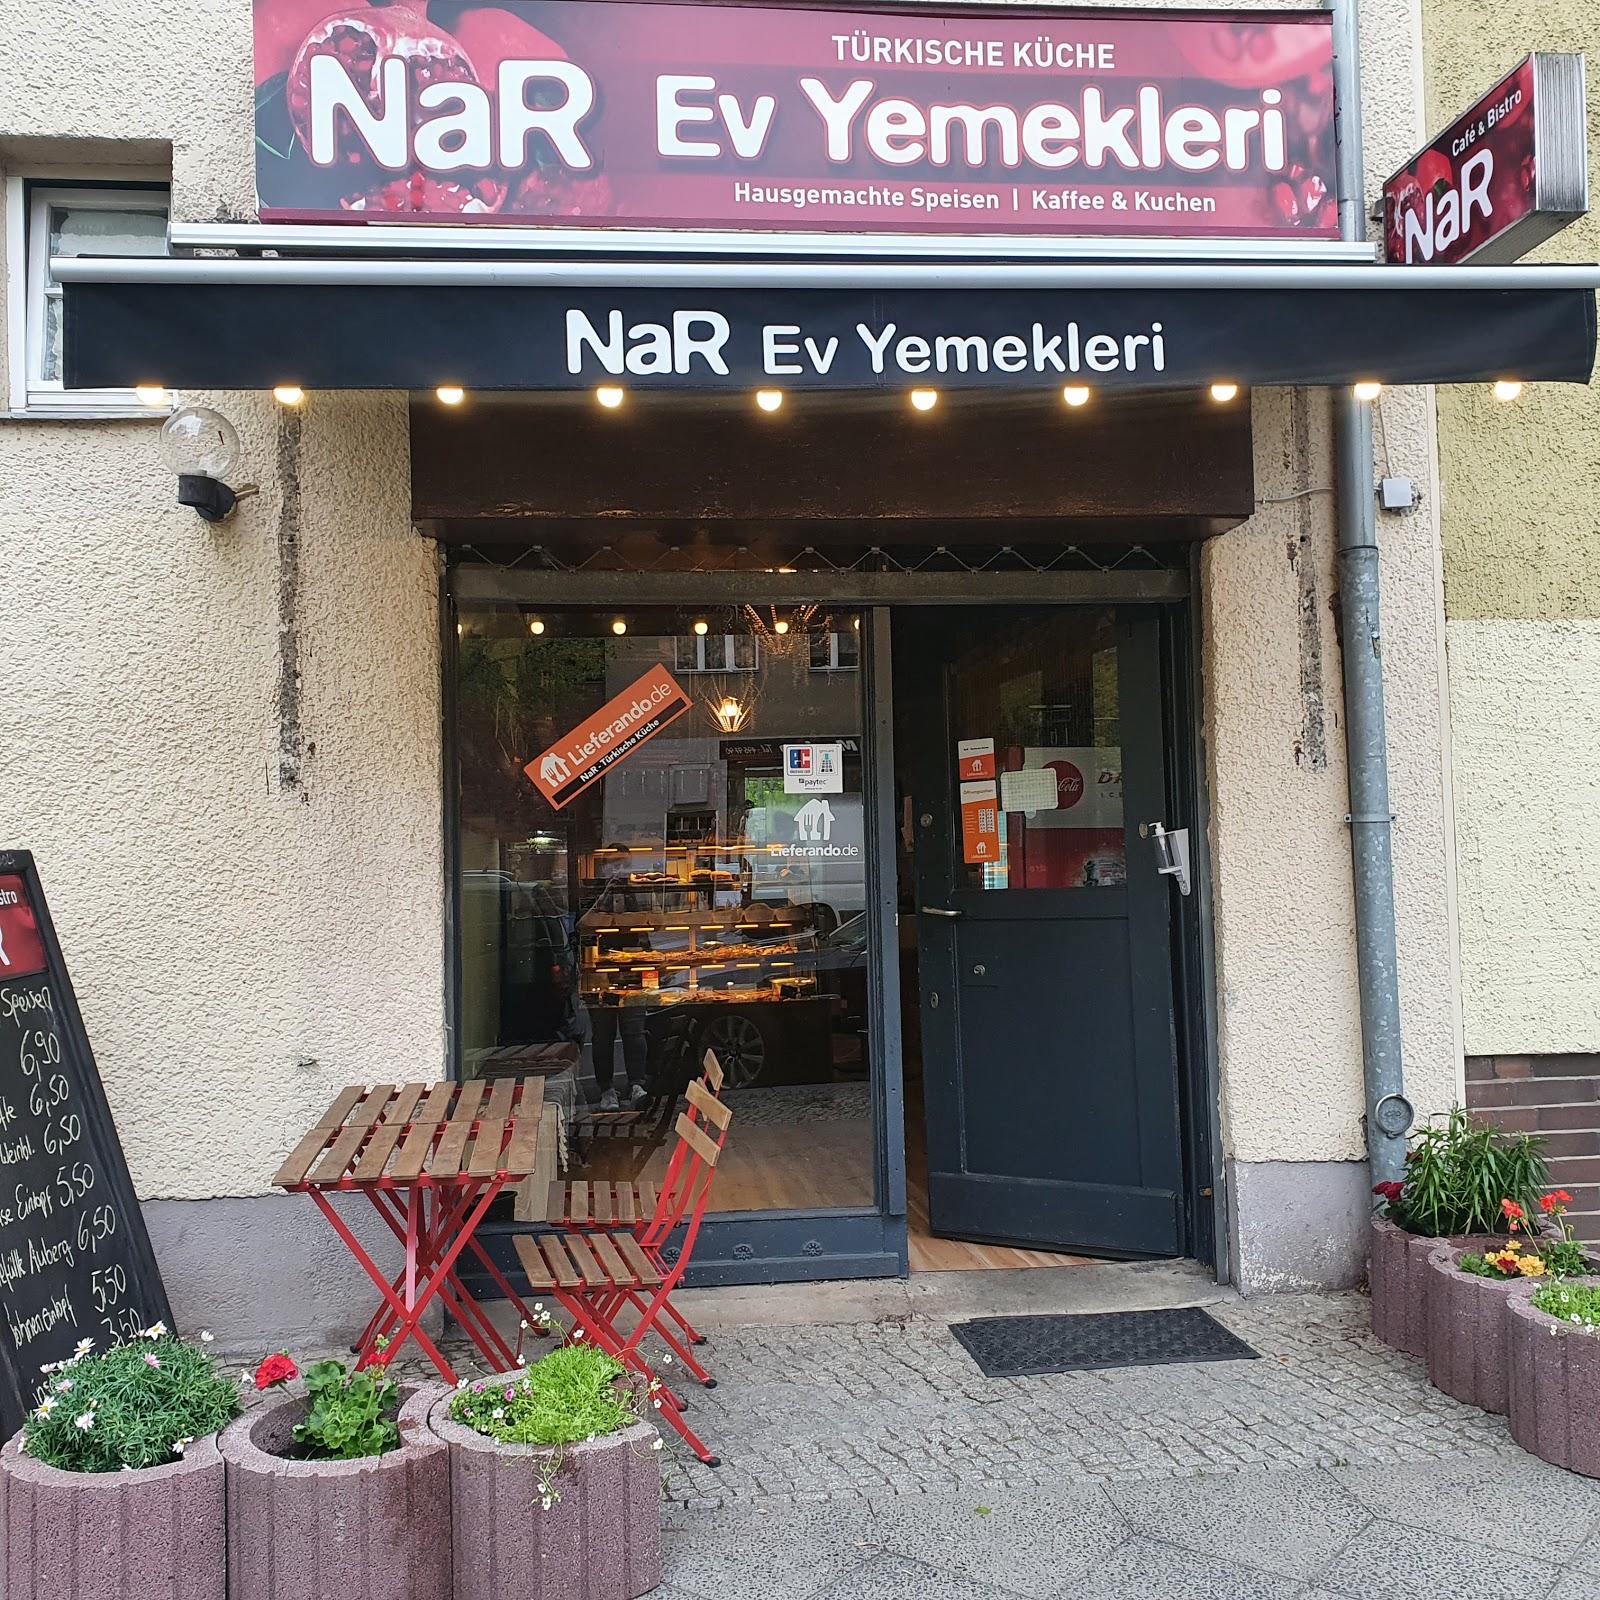 Restaurant "NaR EV Yemekleri türkische hausgemachte Speisen" in Berlin